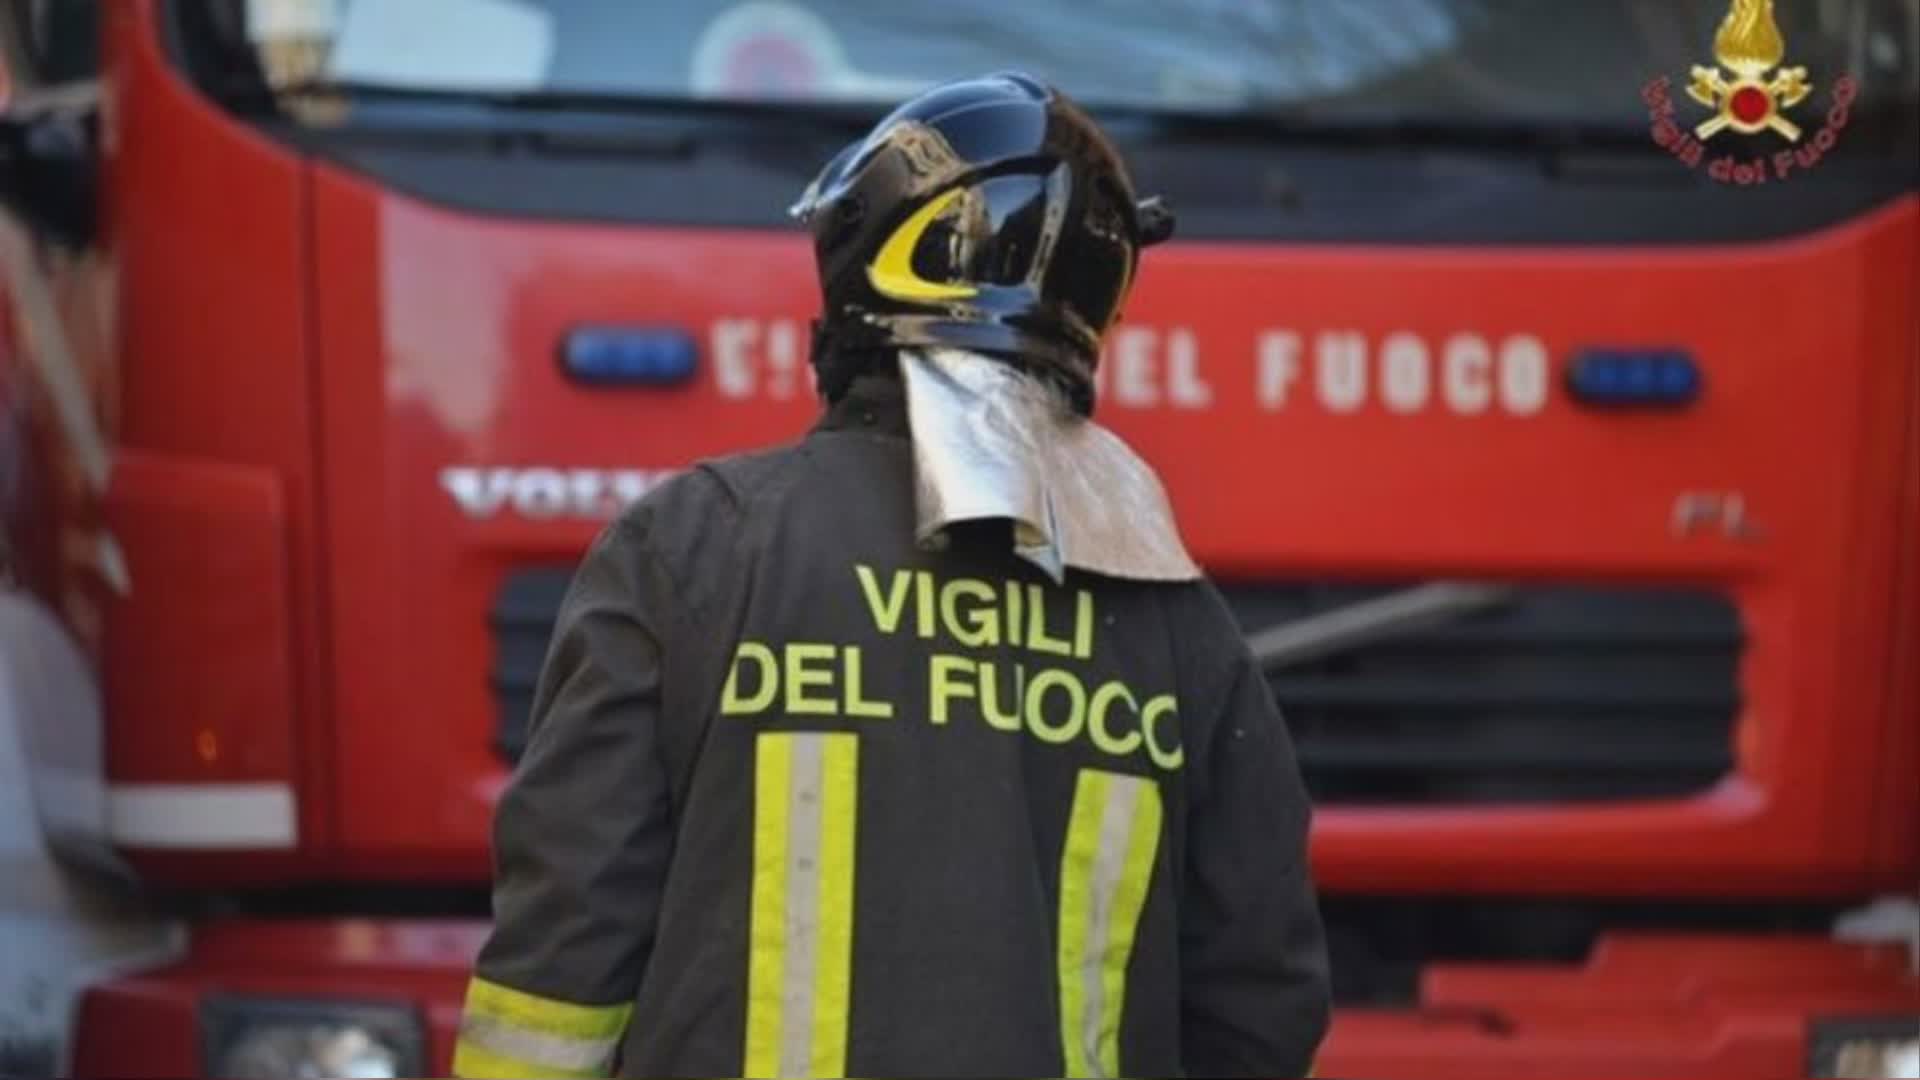 Genova: incendio in centro massaggi, intossicate due donne, una è grave